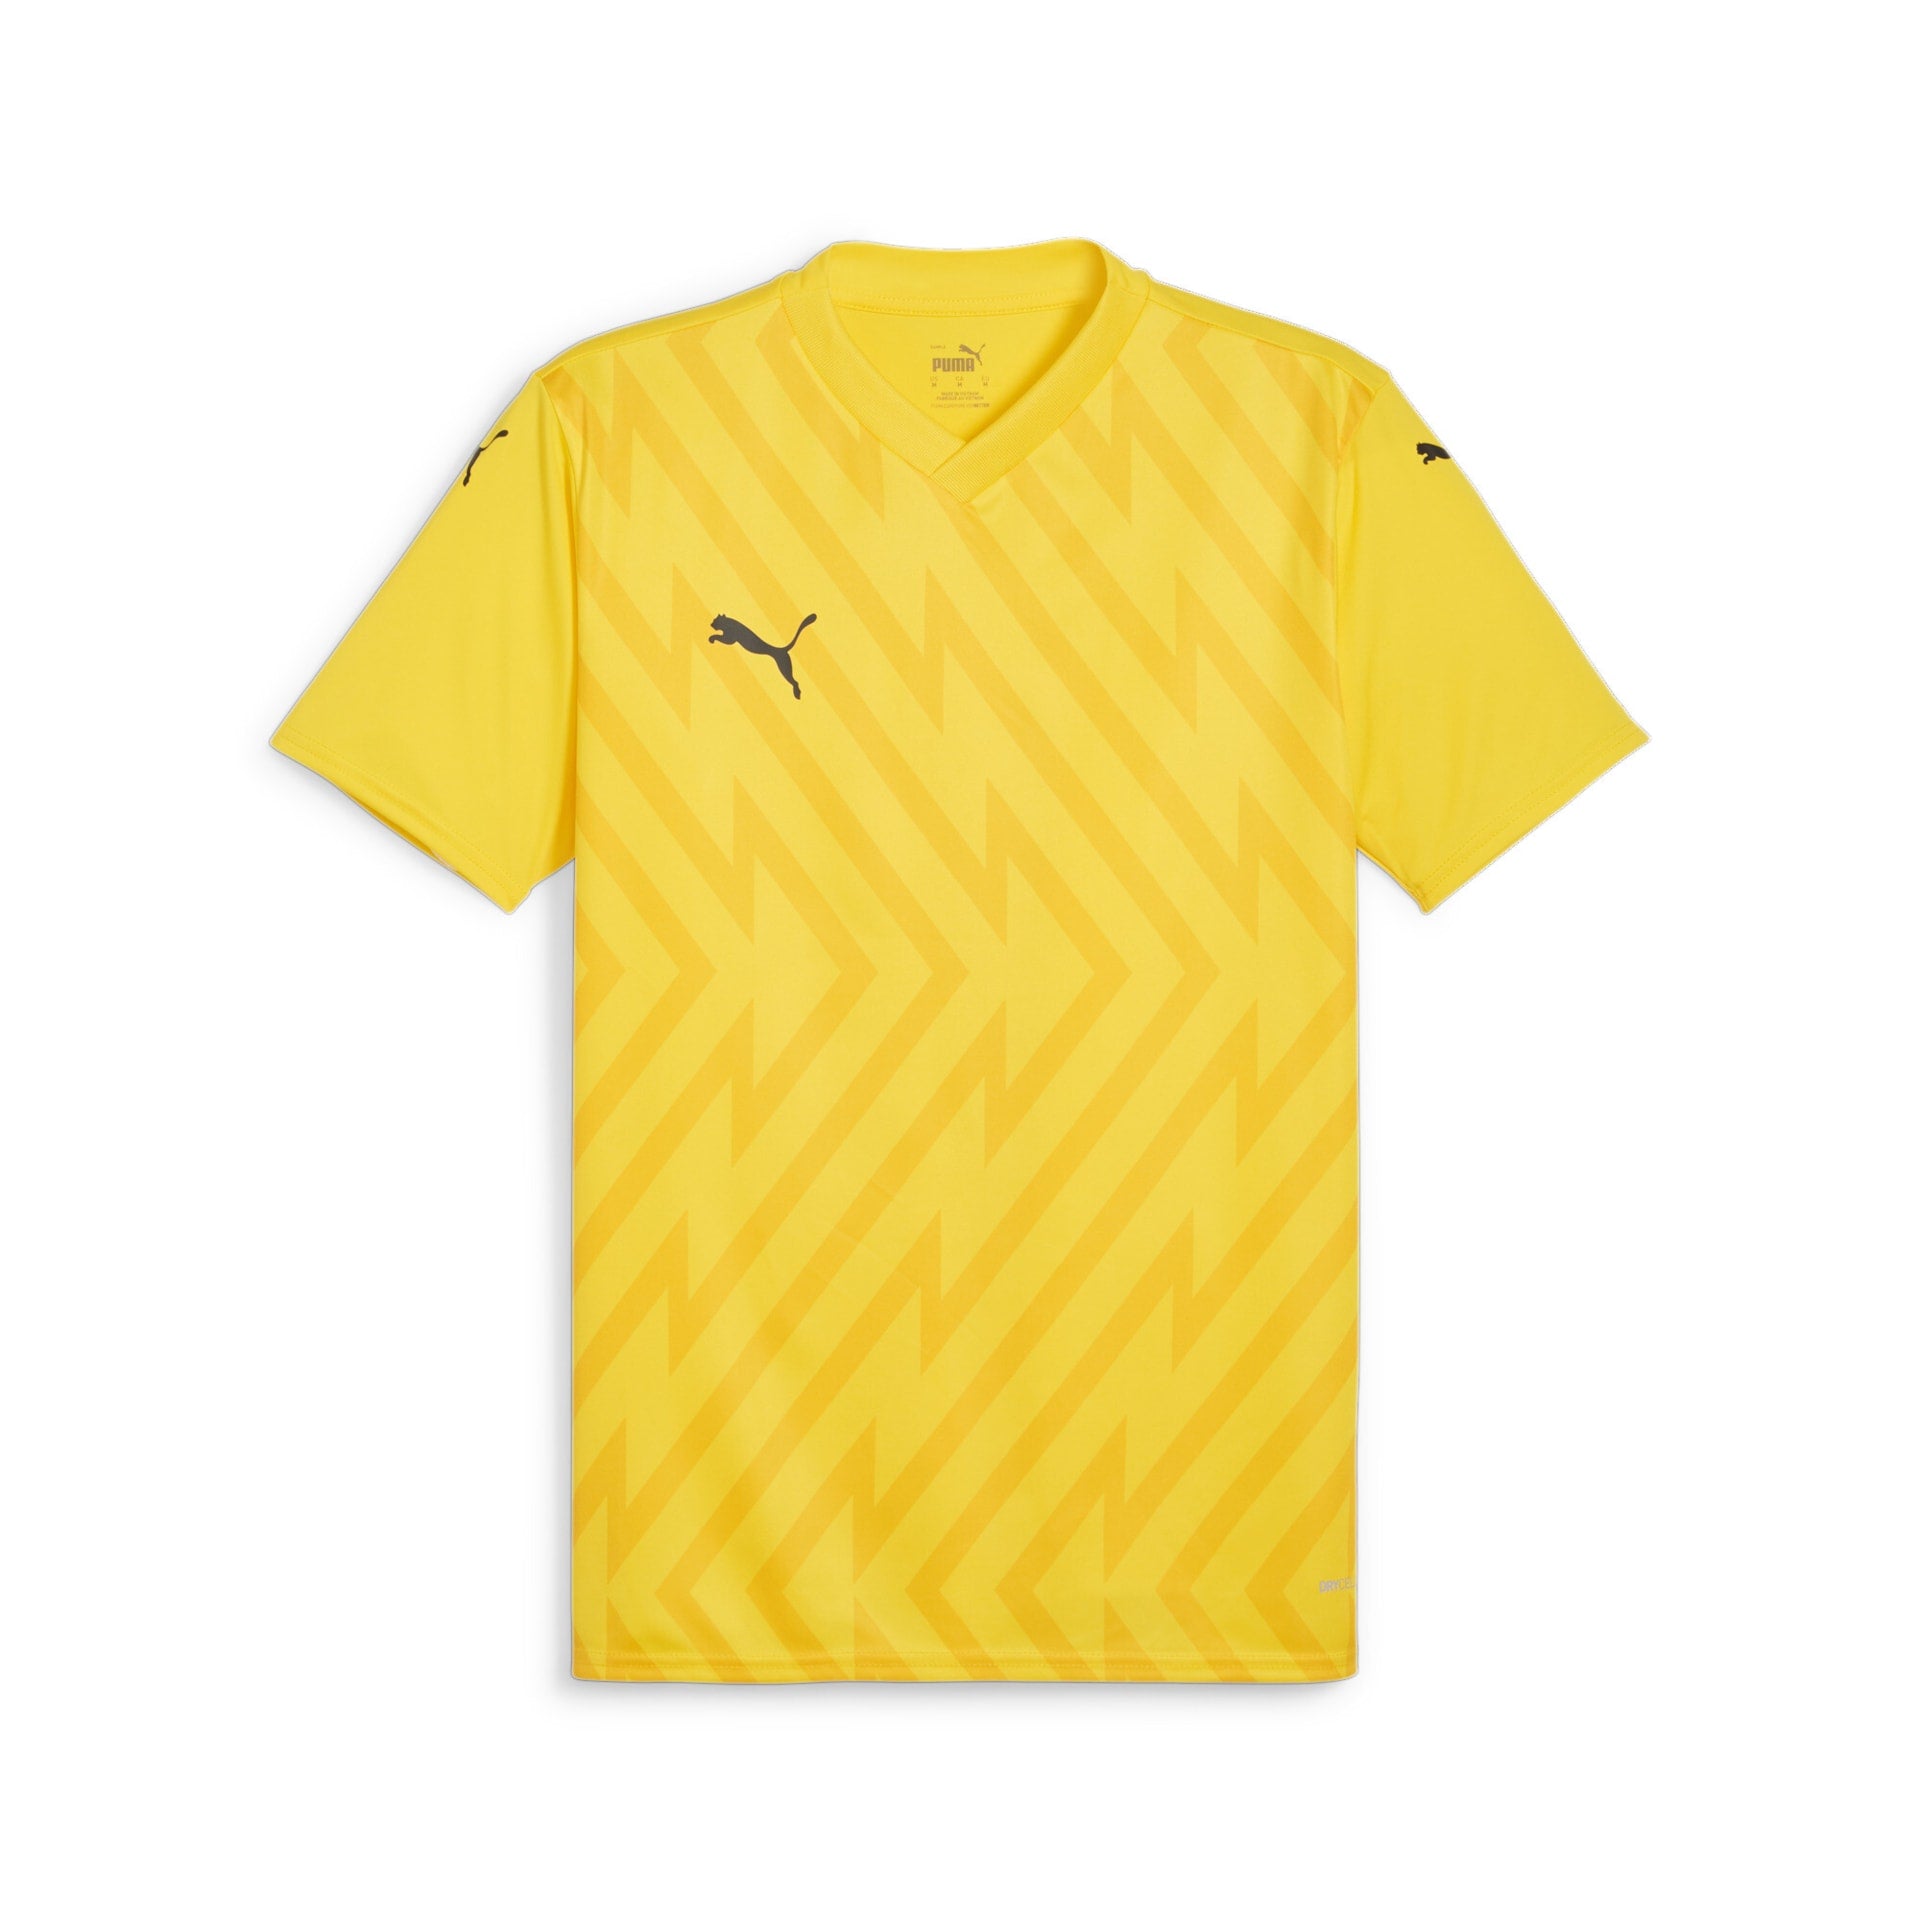 Puma TeamGlory - Faster Yellow